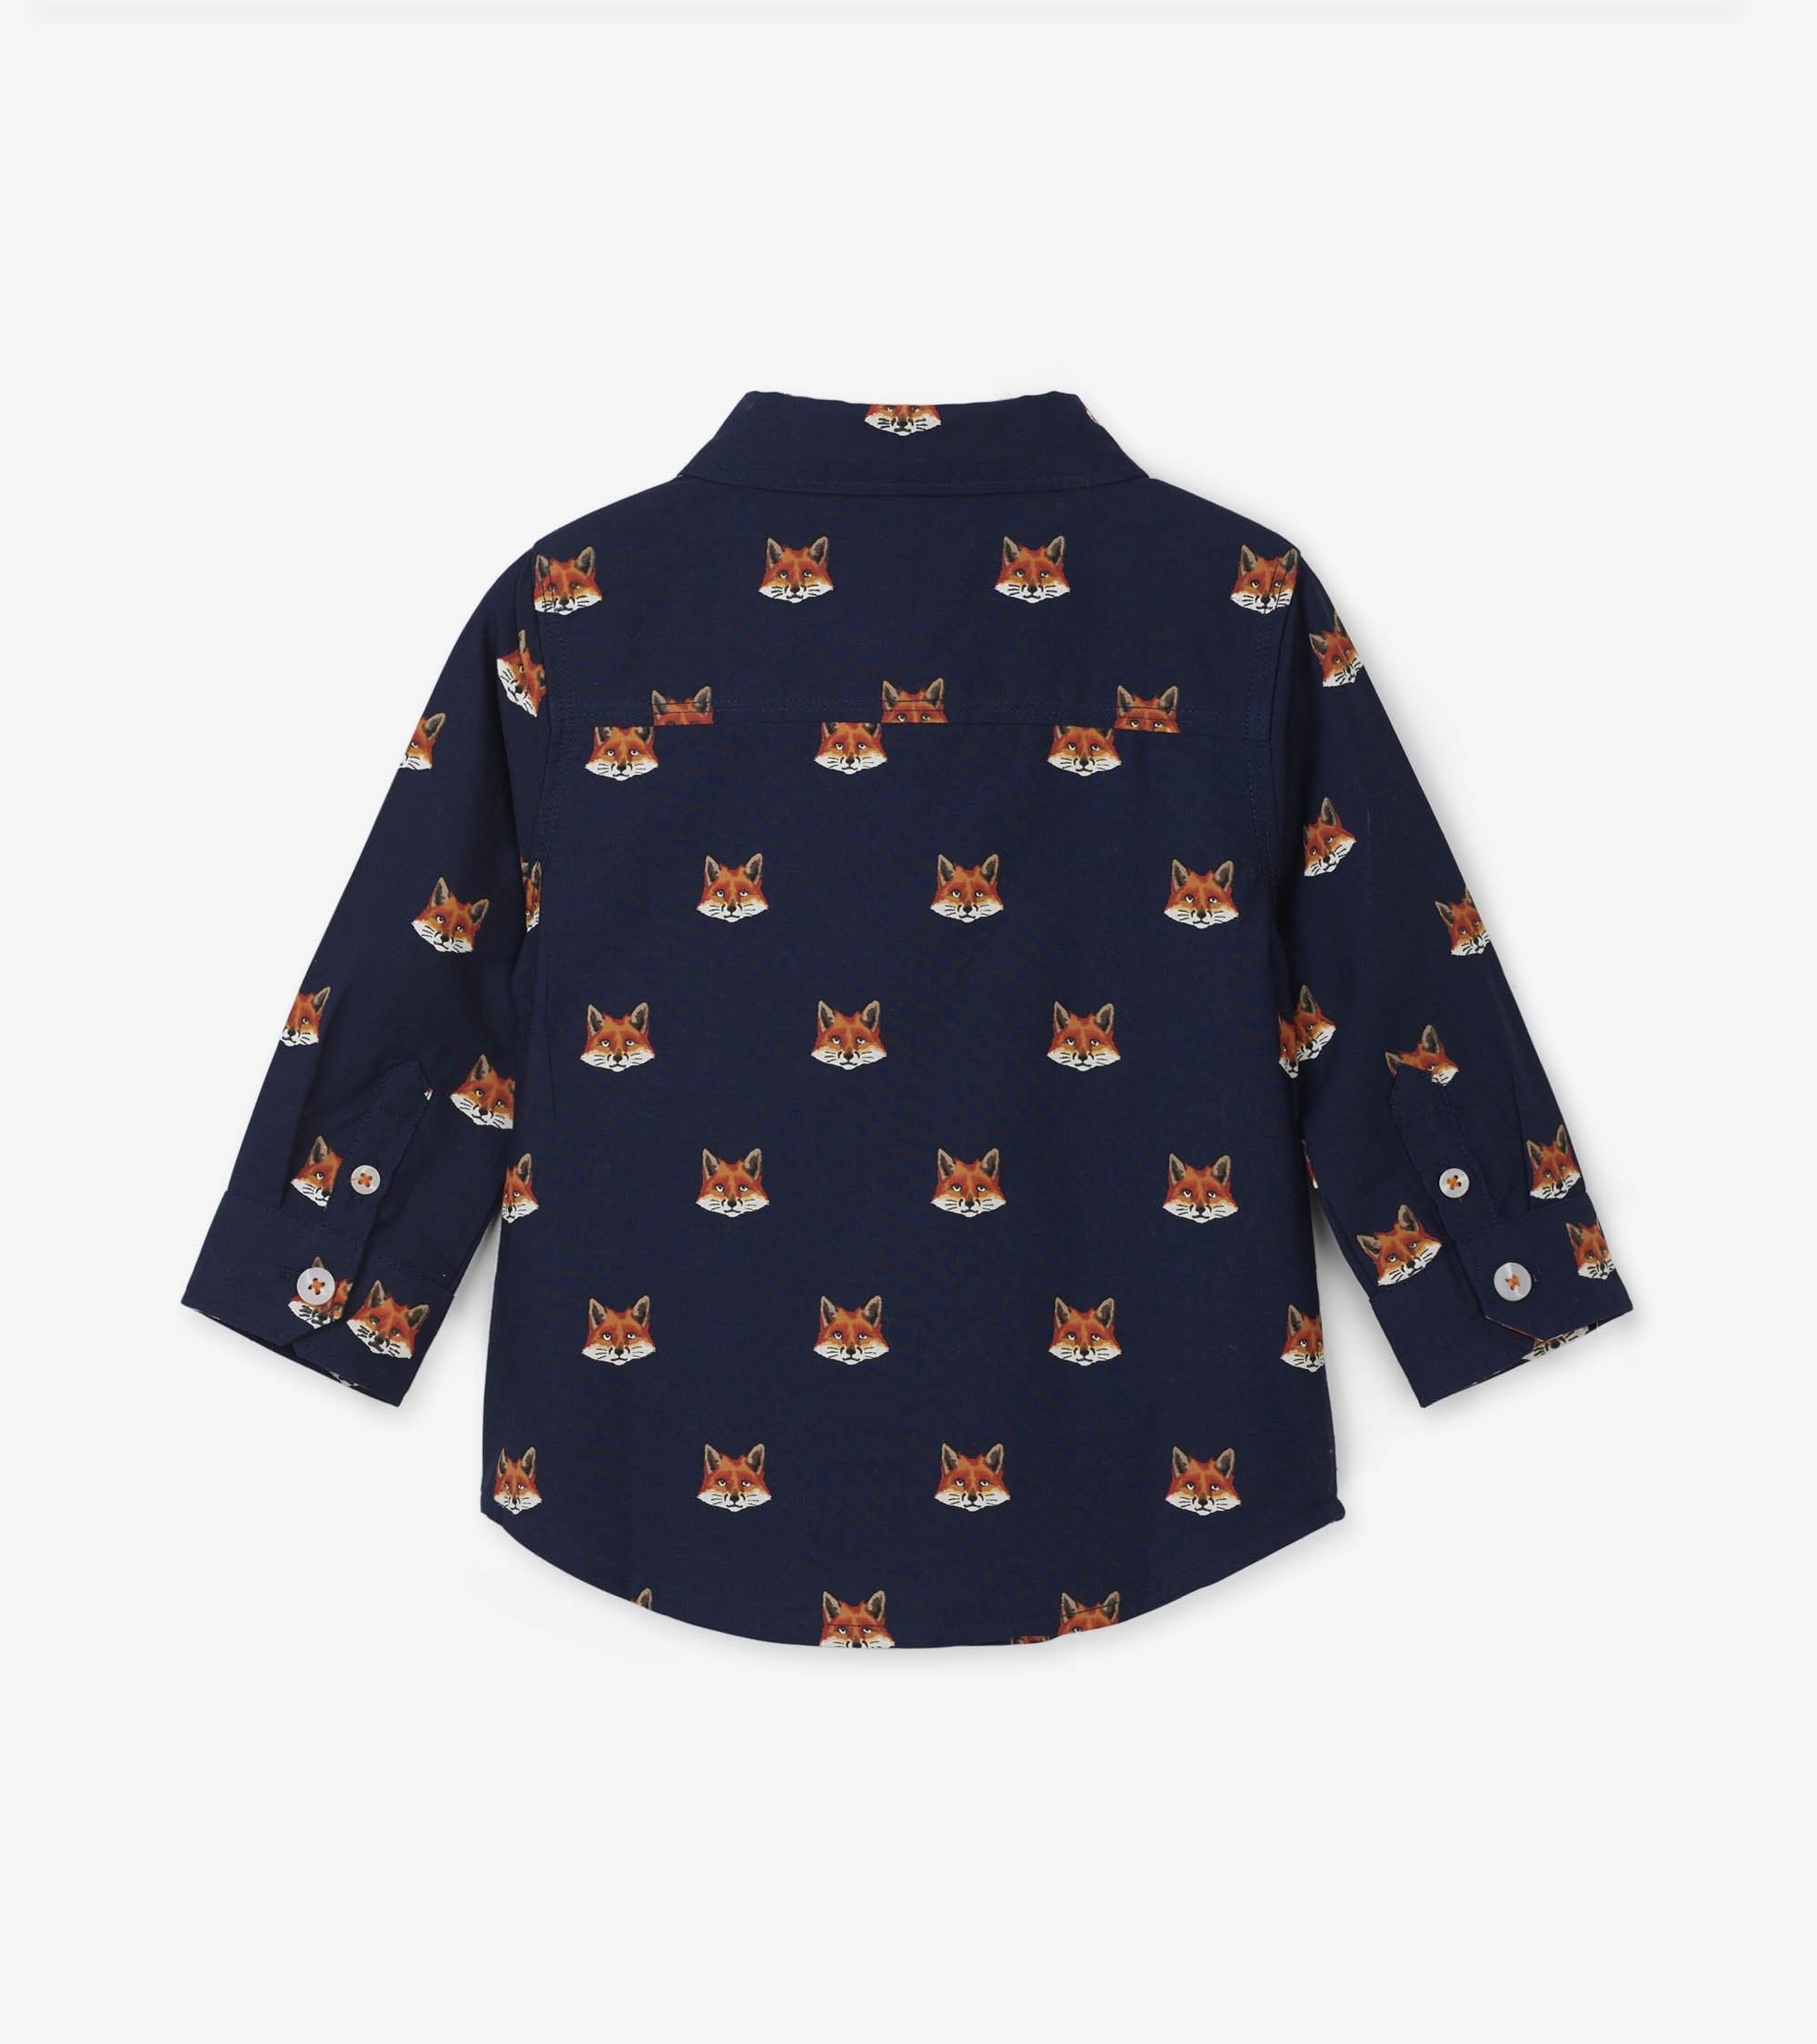 Hatley ’Clever Fox’ Navy Shirt - Shirt